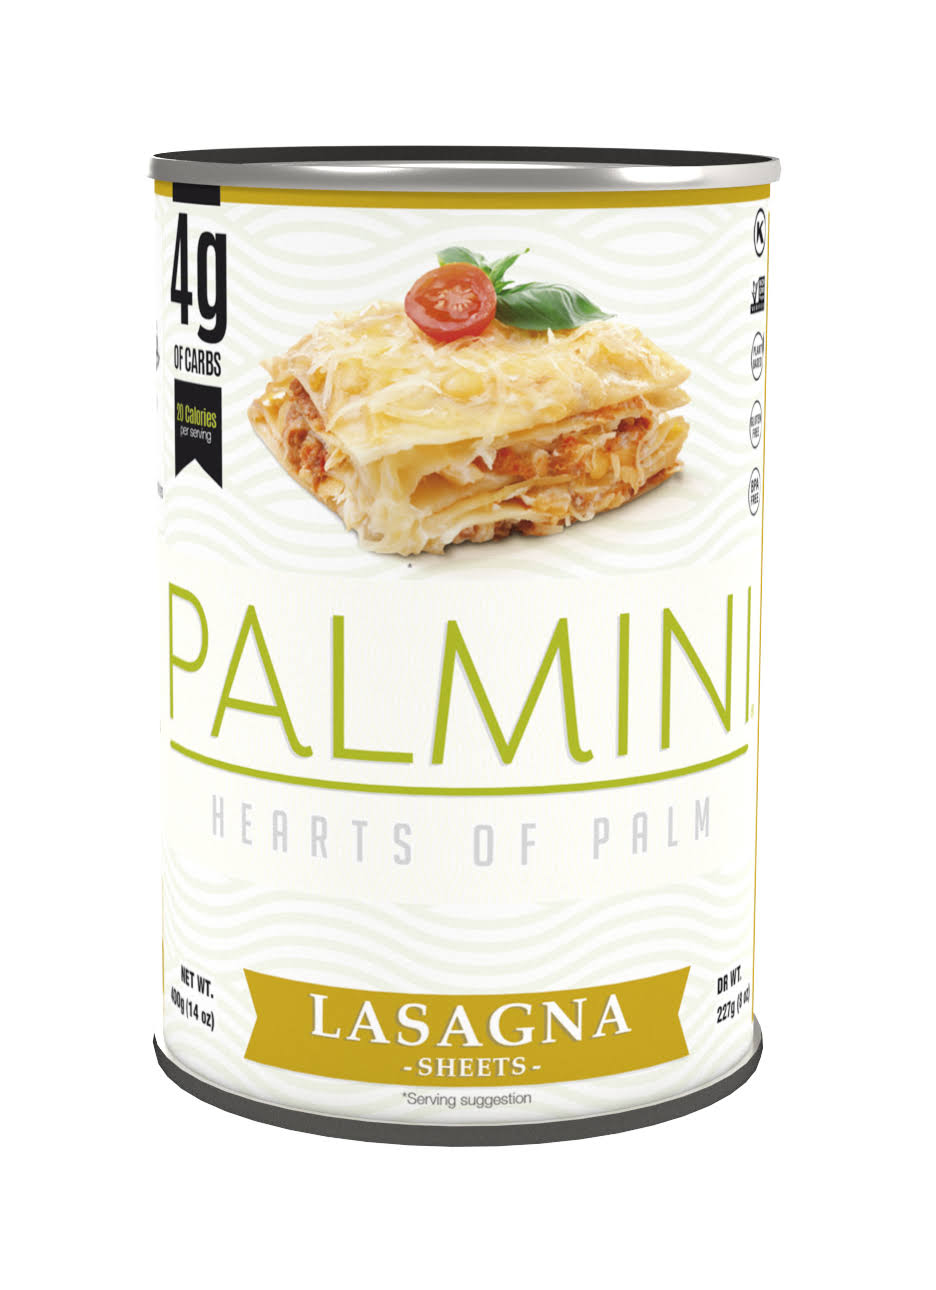 PALMINI Hearts of Palm Lasagna Sheets, 8 OZ